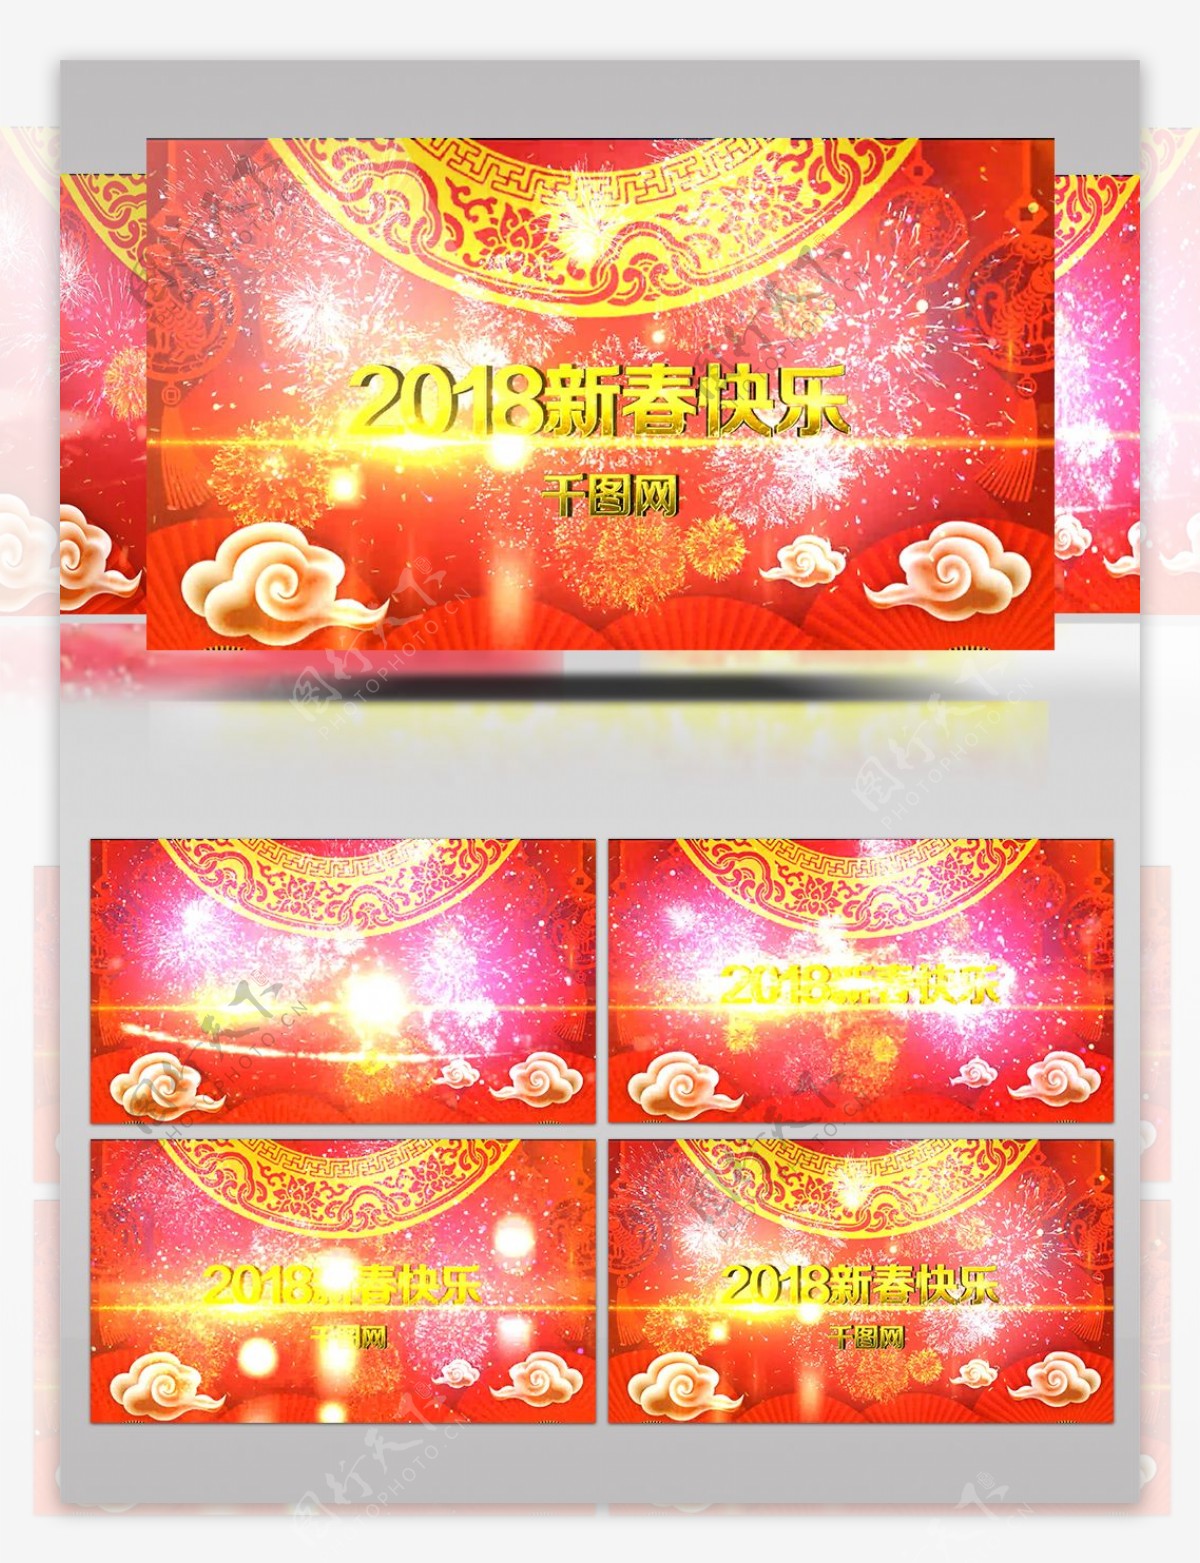 震撼大气的金色3D字幕新年快乐AE模板